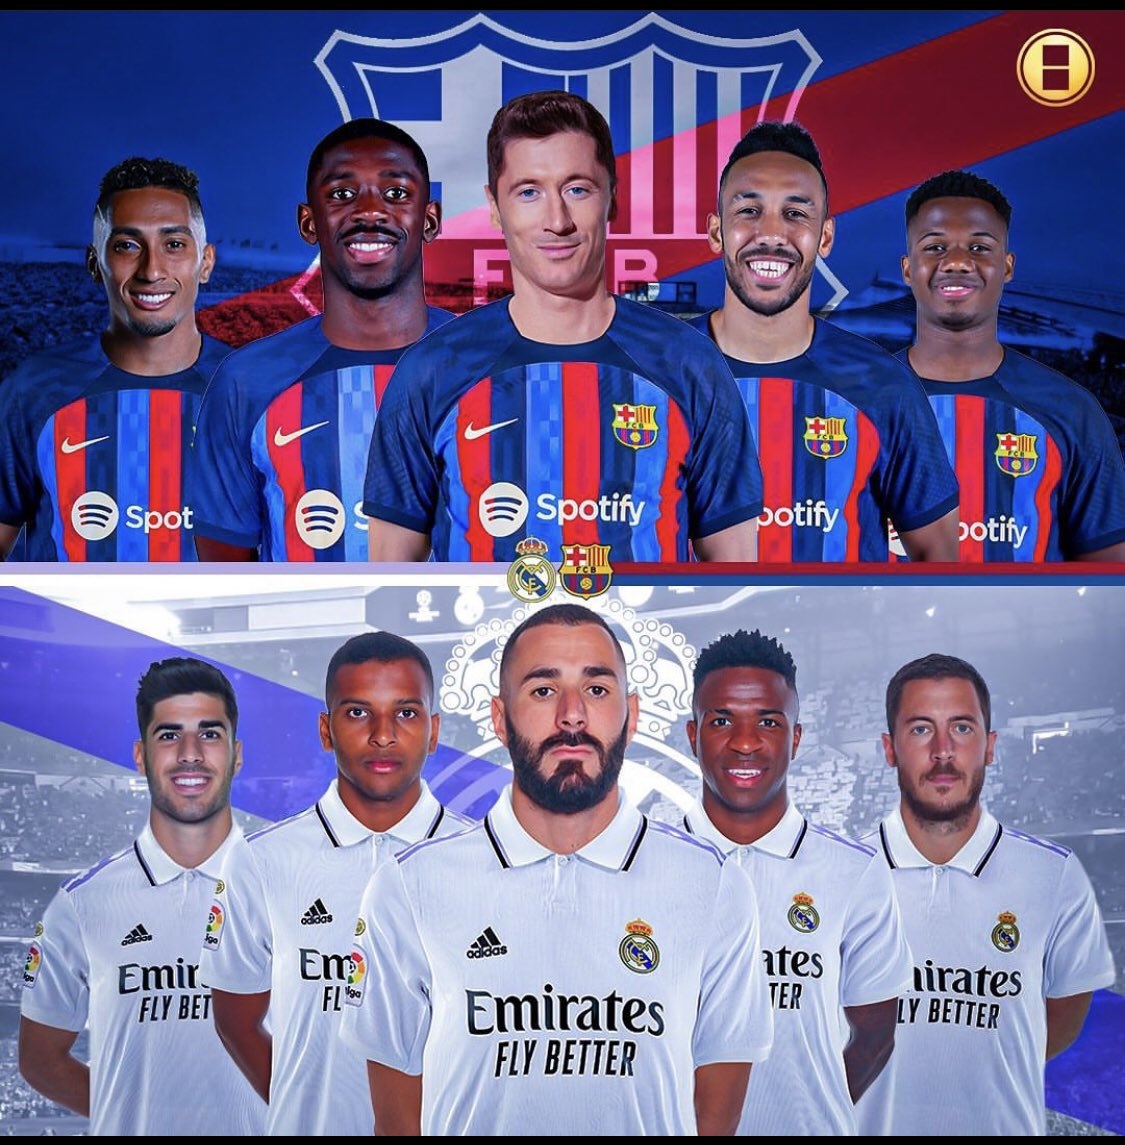 Xem trực tiếp bóng đá Real Madrid vs Barcelona ở đâu, kênh nào? Link xem trực tiếp El Clasico FullHD